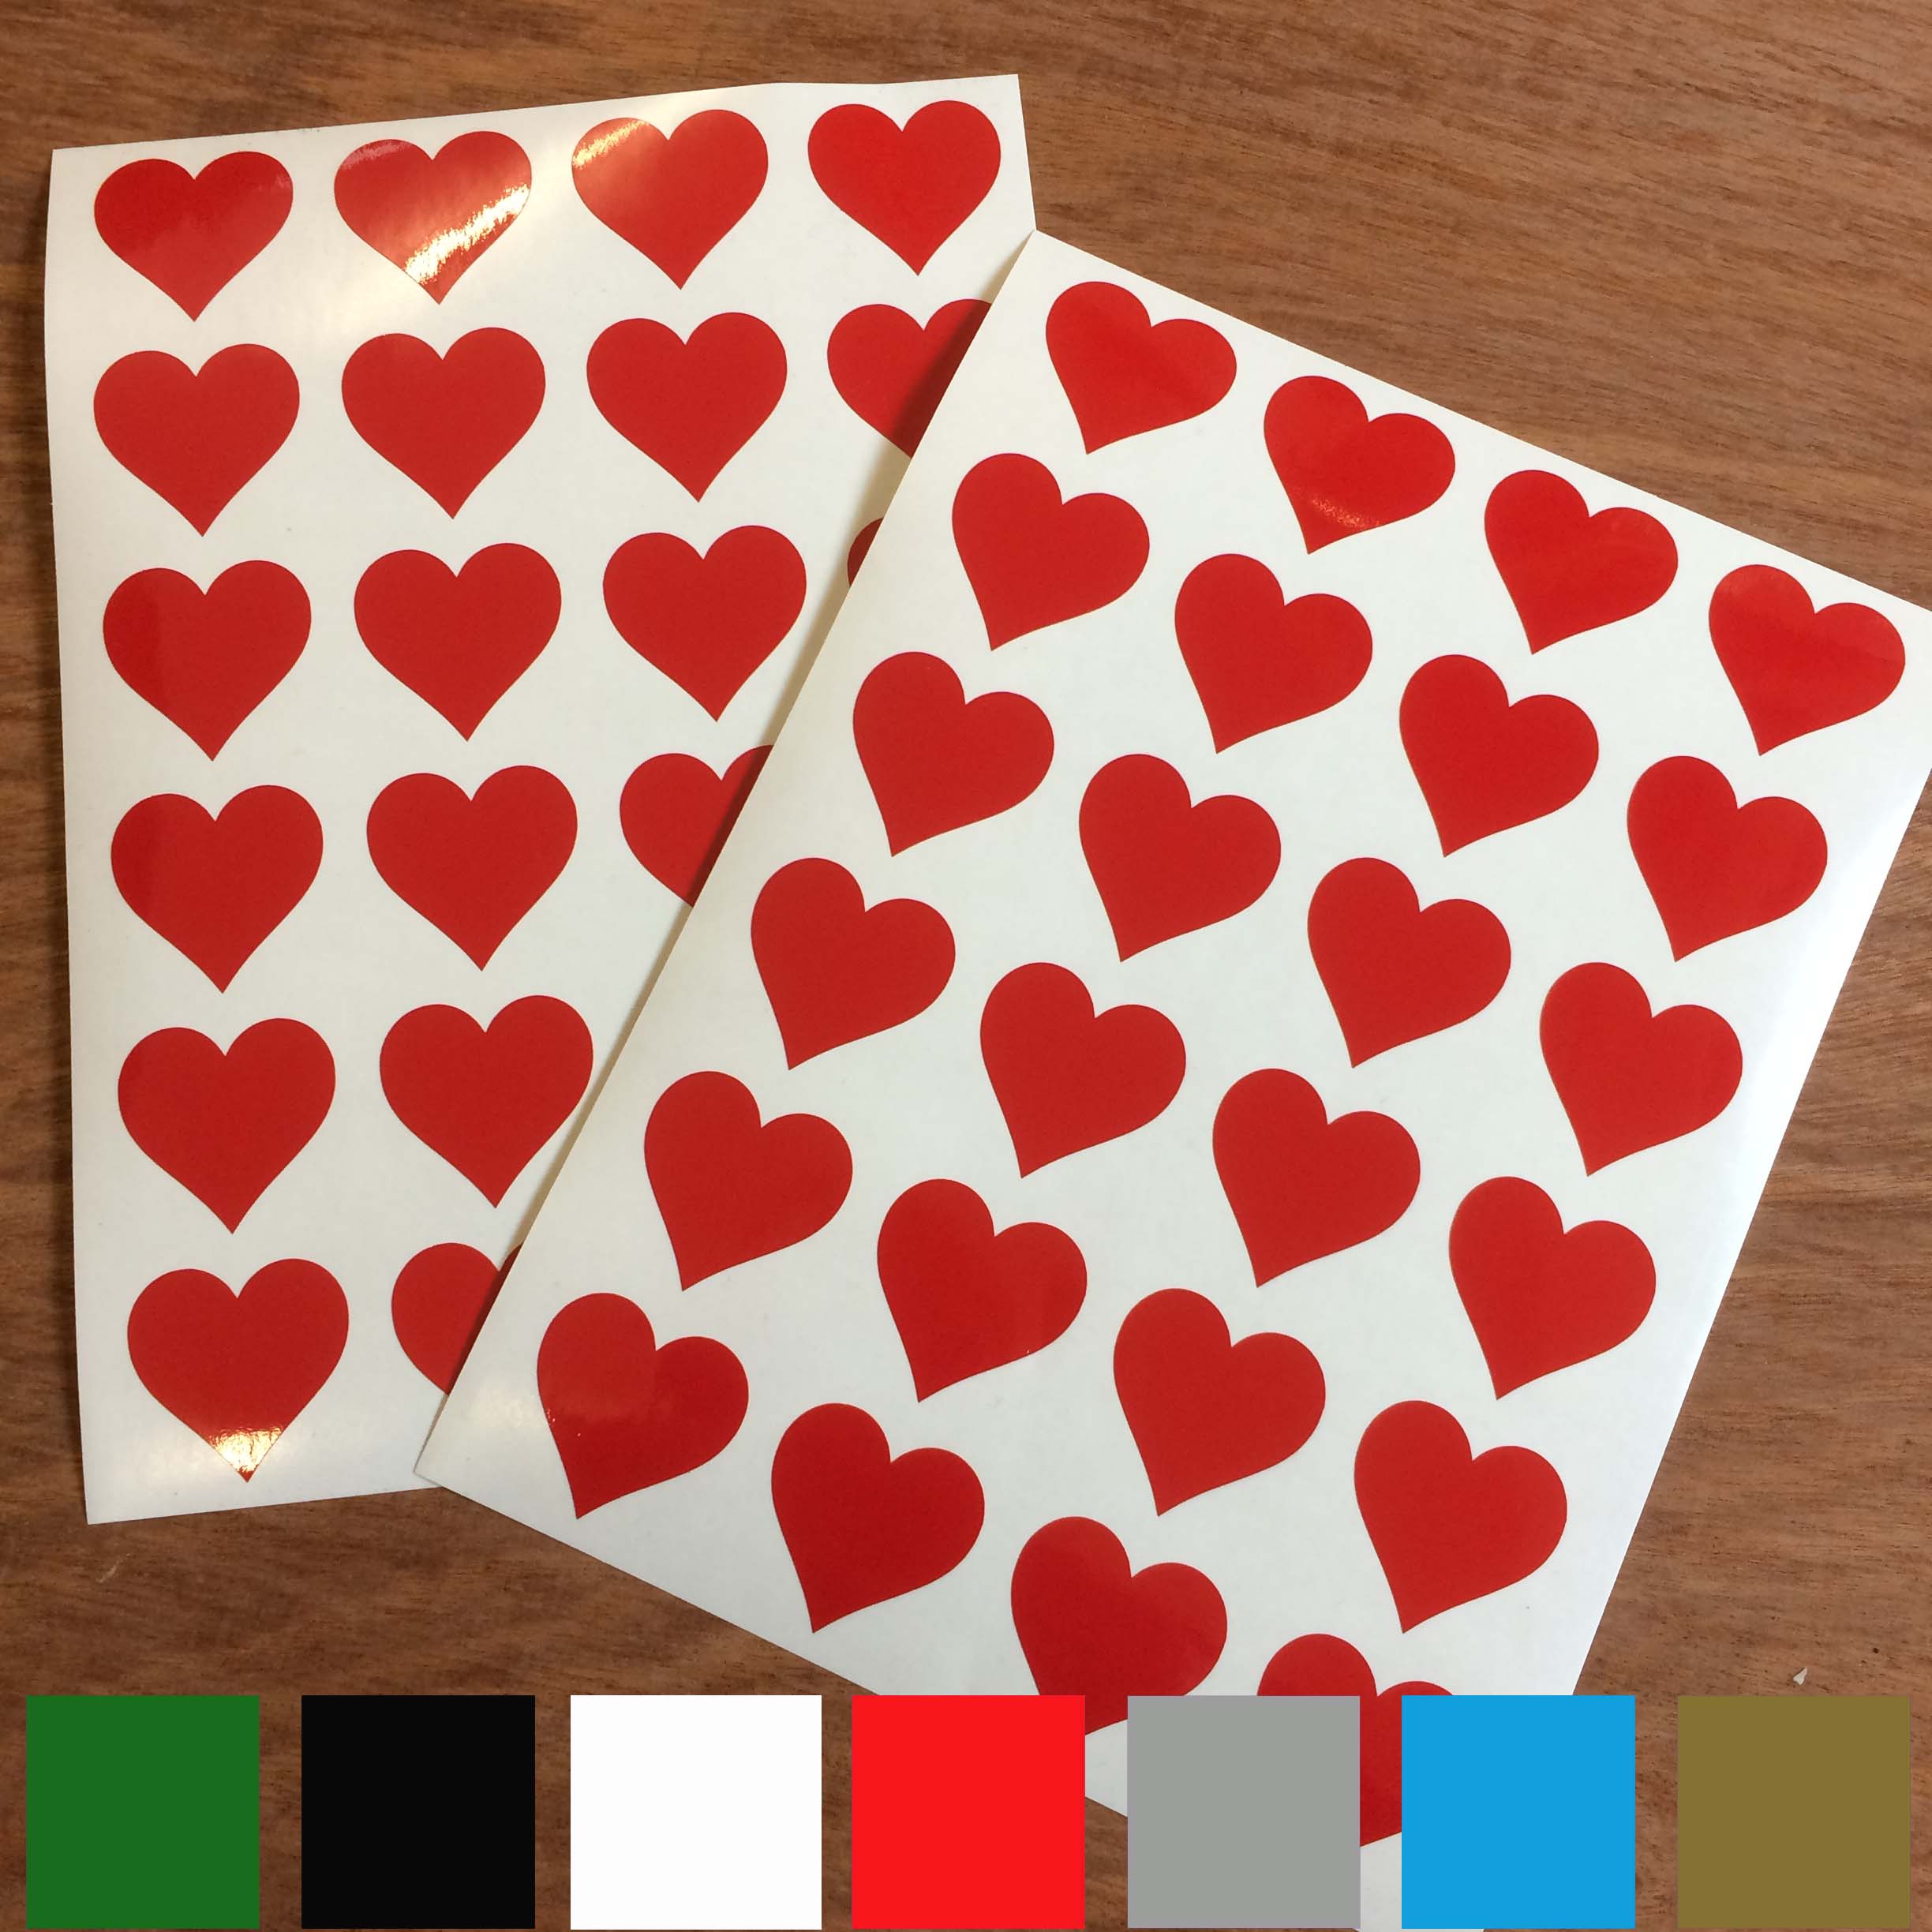 HEART SHAPE STICKERS. Heart Shape Stickers. Red,